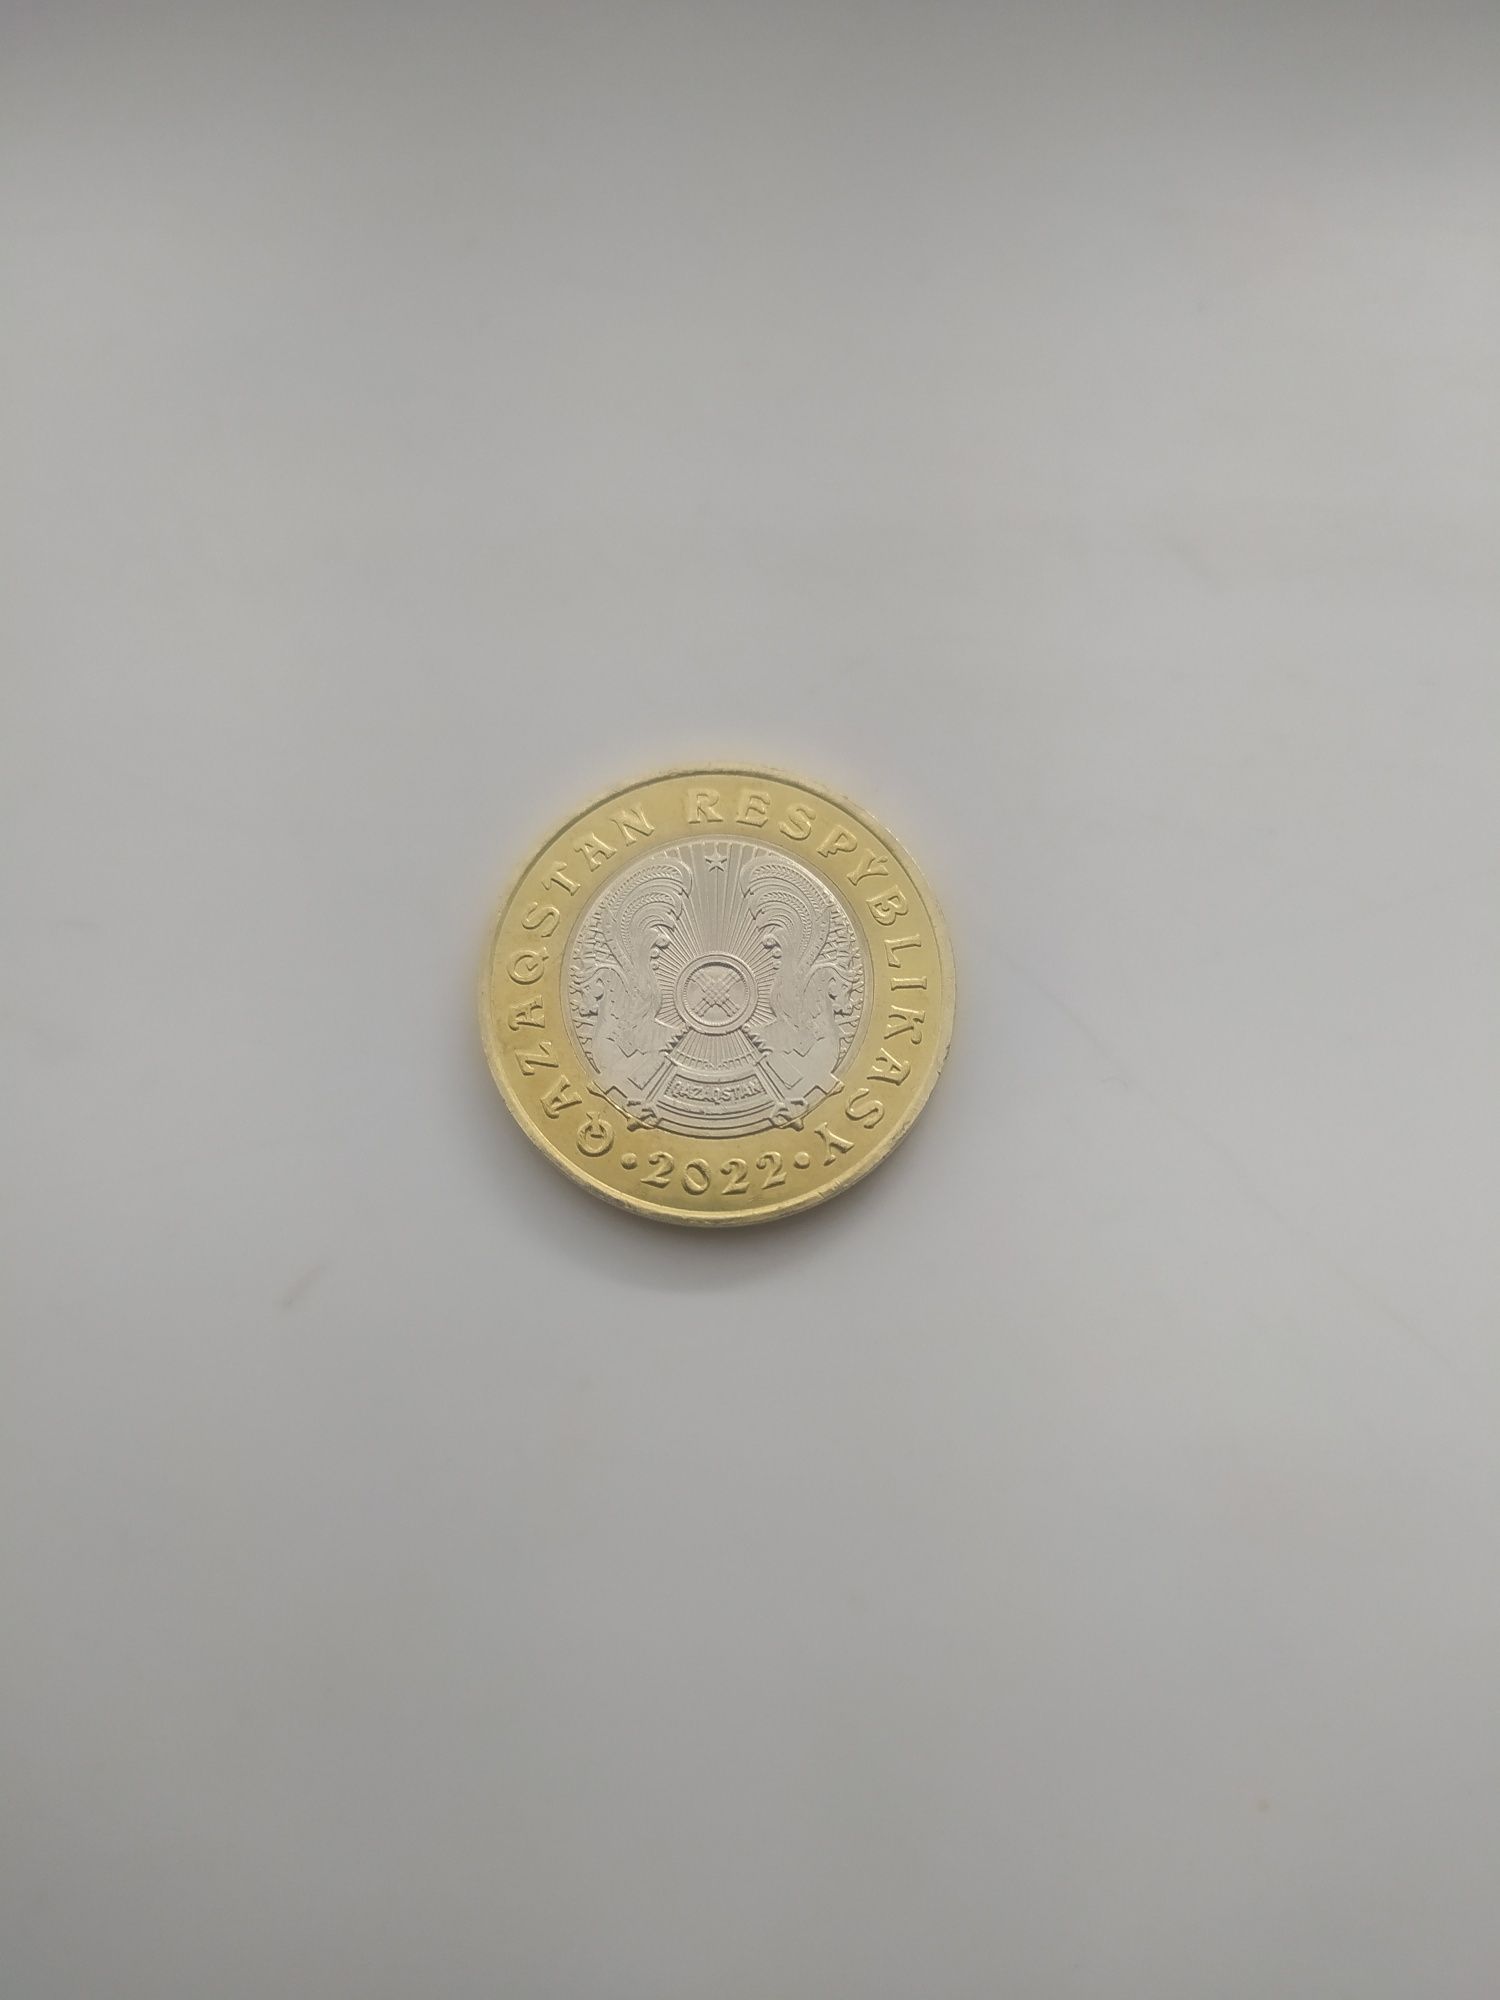 Редкая монет 100 тенге